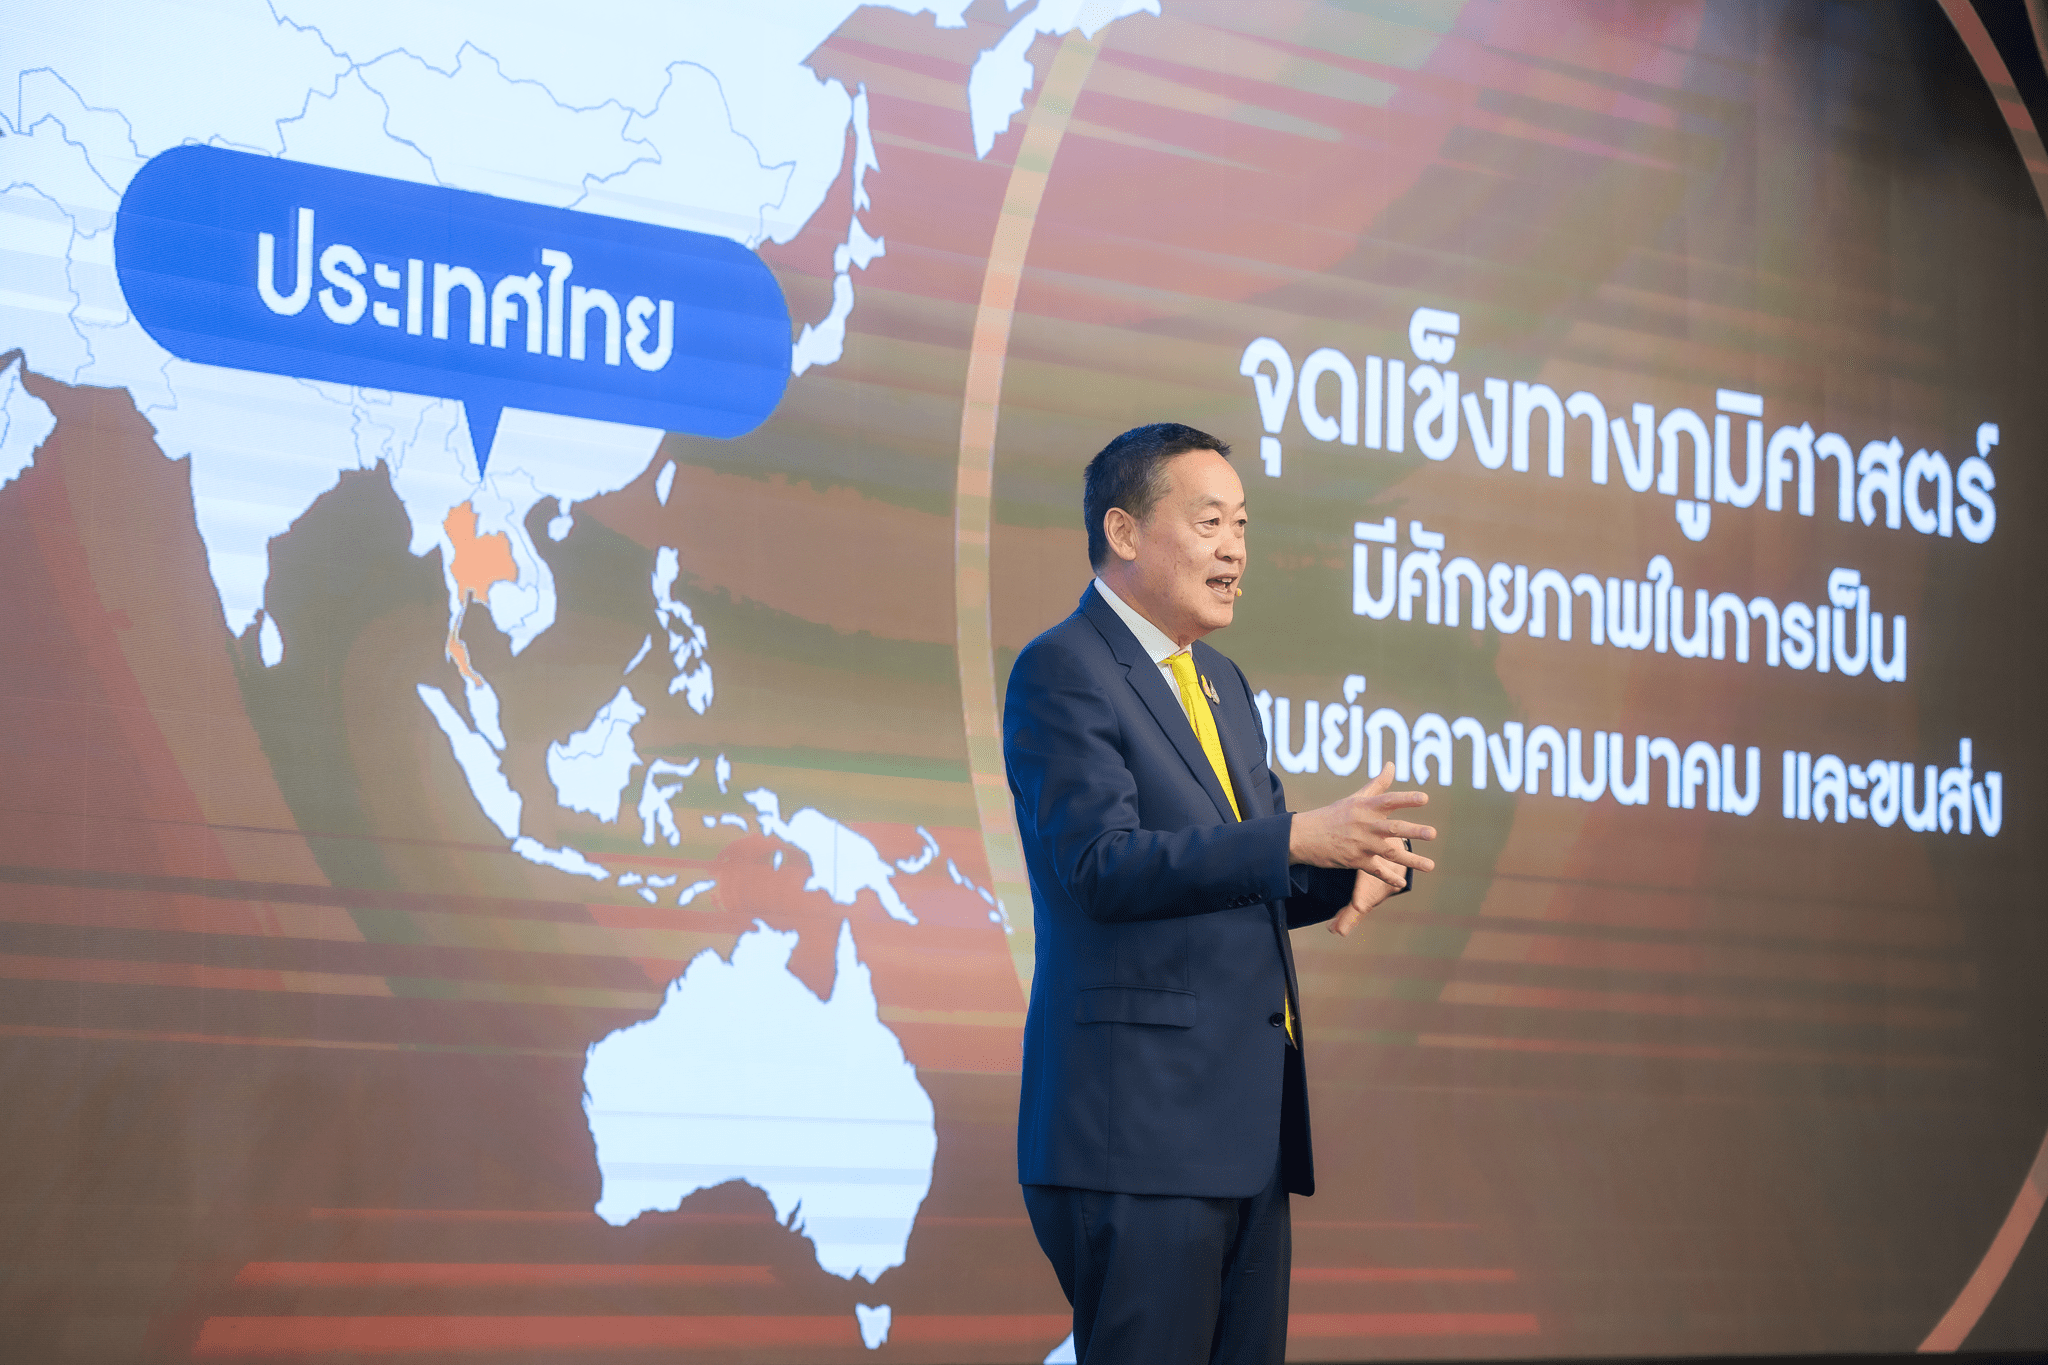 นายกรัฐมนตรี แสดงวิสัยทัศน์ “Ignite Thailand” จุดพลัง รวมใจ ไทยต้องเป็นหนึ่ง